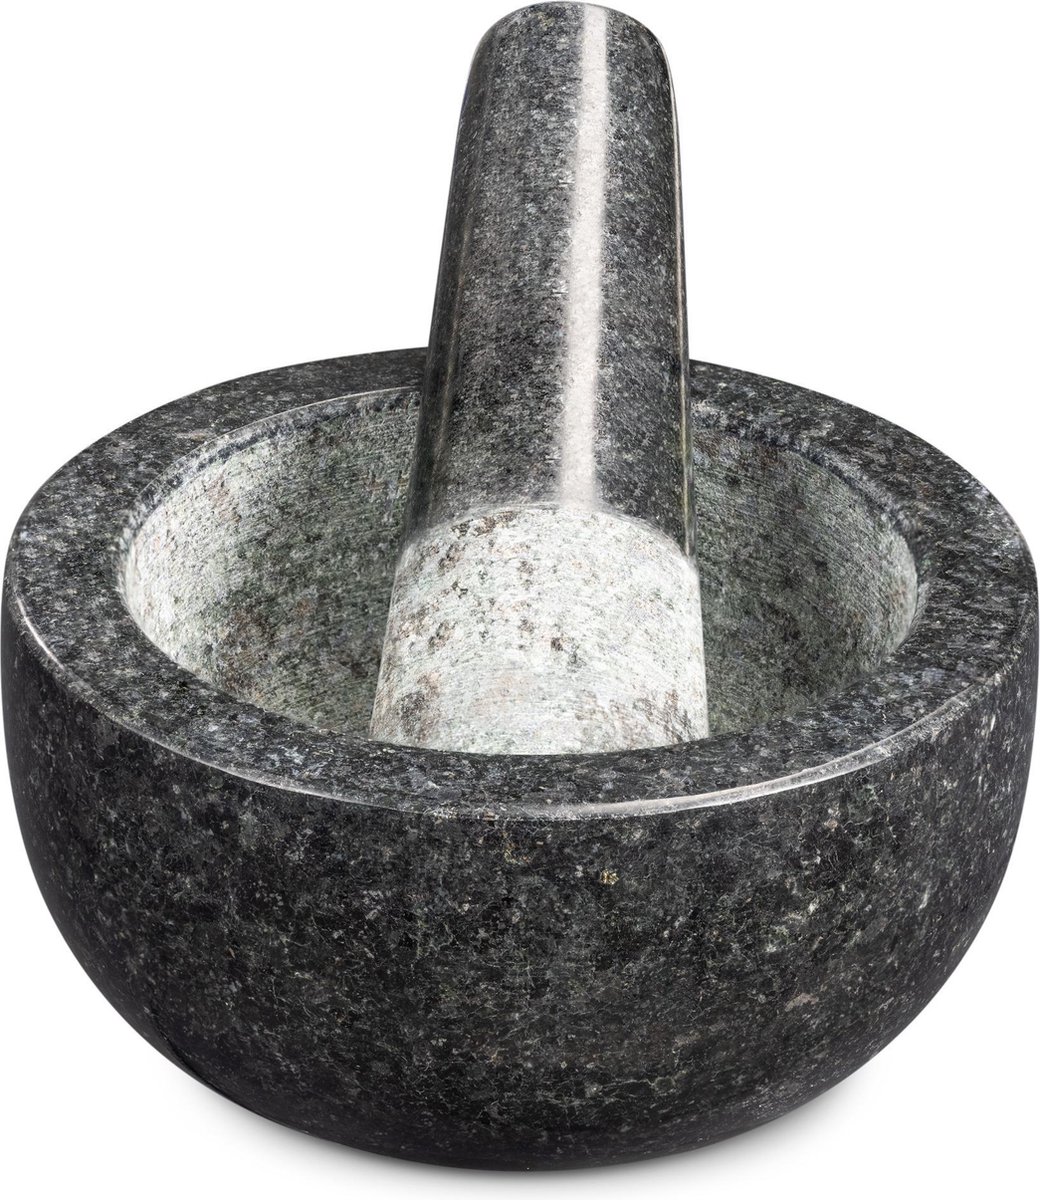 Navaris vijzel met stamper van graniet - Granieten vijzel voor kruidenmixen, pesto en dips - Set inclusief stamper voor fijnmalen - Ø 12 cm - Navaris